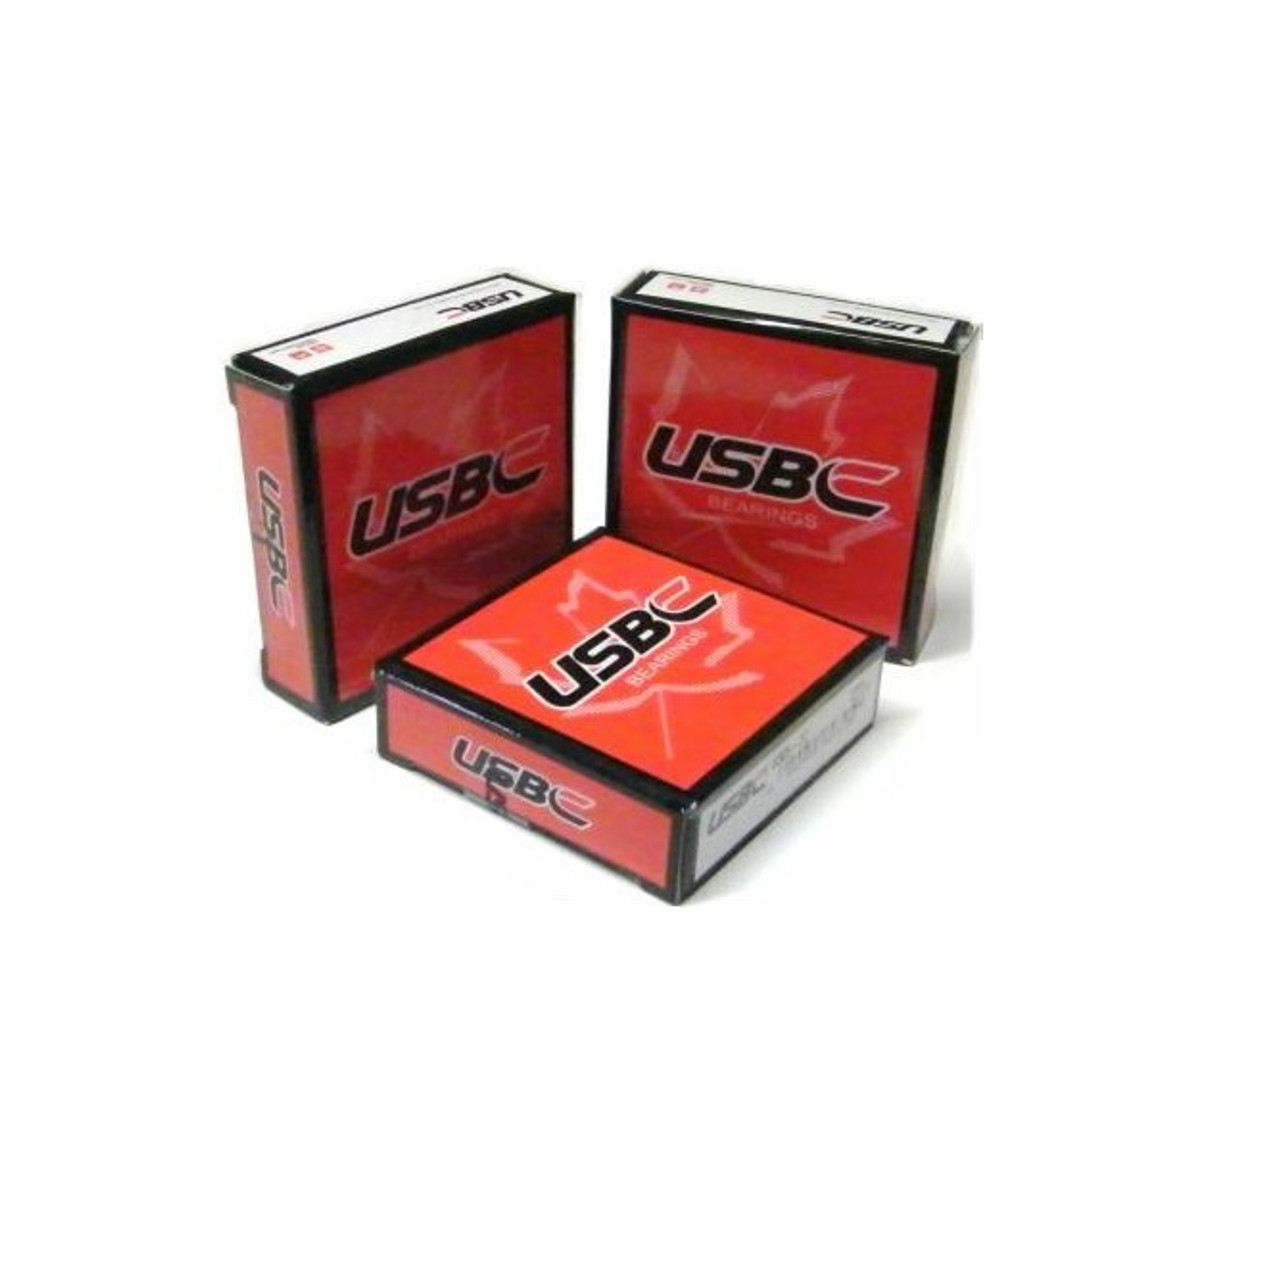 6009-2RS USBC bearing